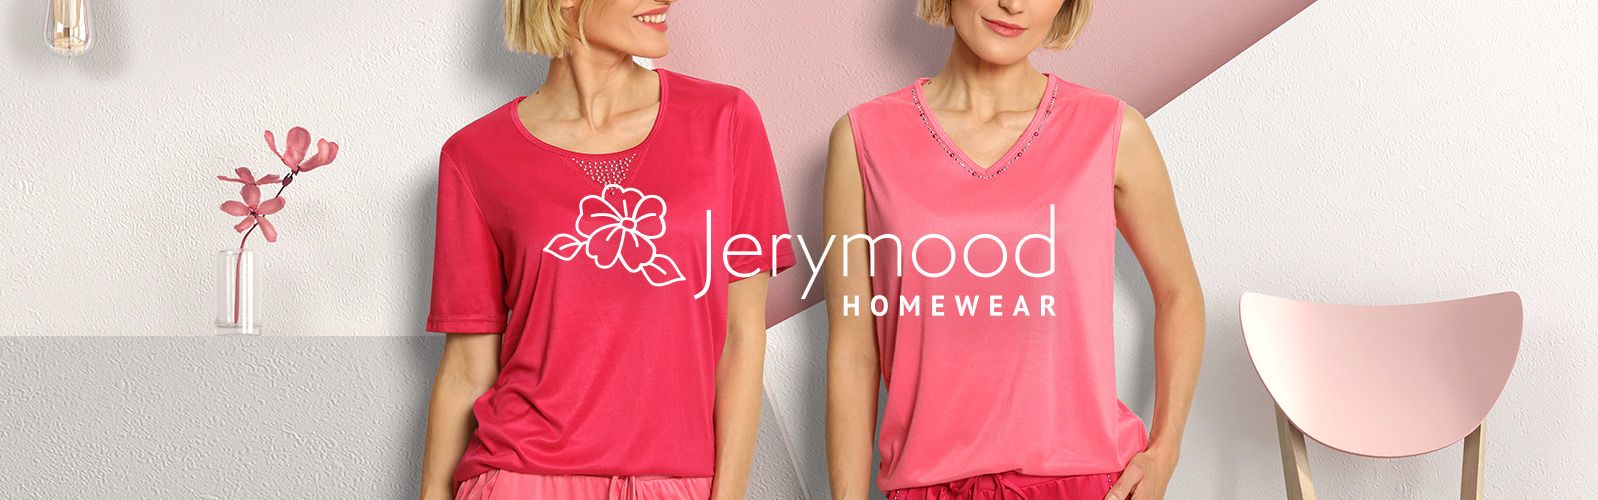 JERYMOOD Homewear